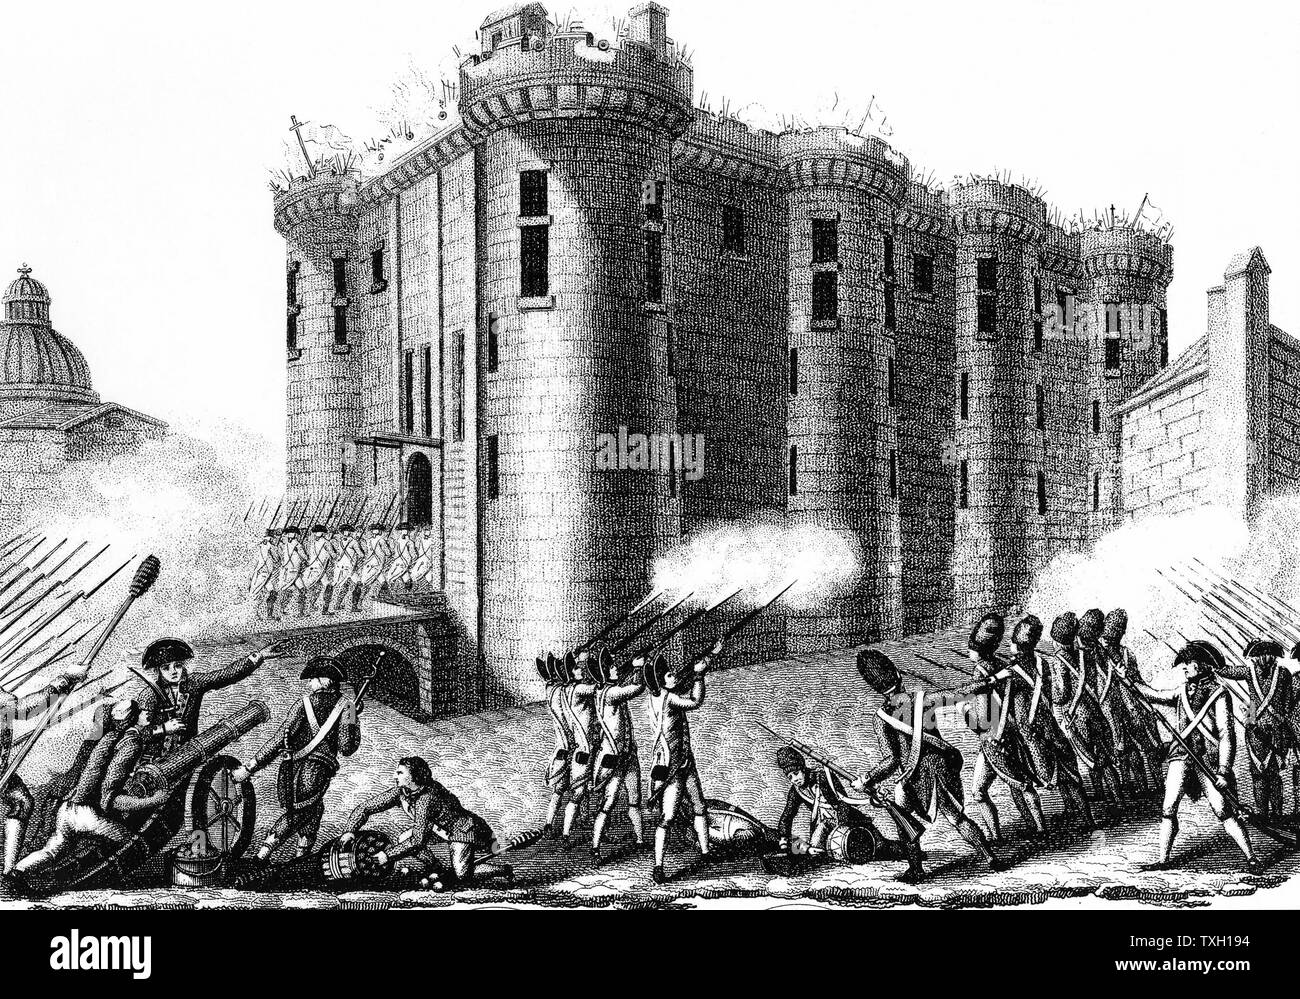 Sturm auf die Bastille durch die Pariser durch den Grenadier Guards vom 14. Juli 1789 führte. Gravur 1804 Stockfoto